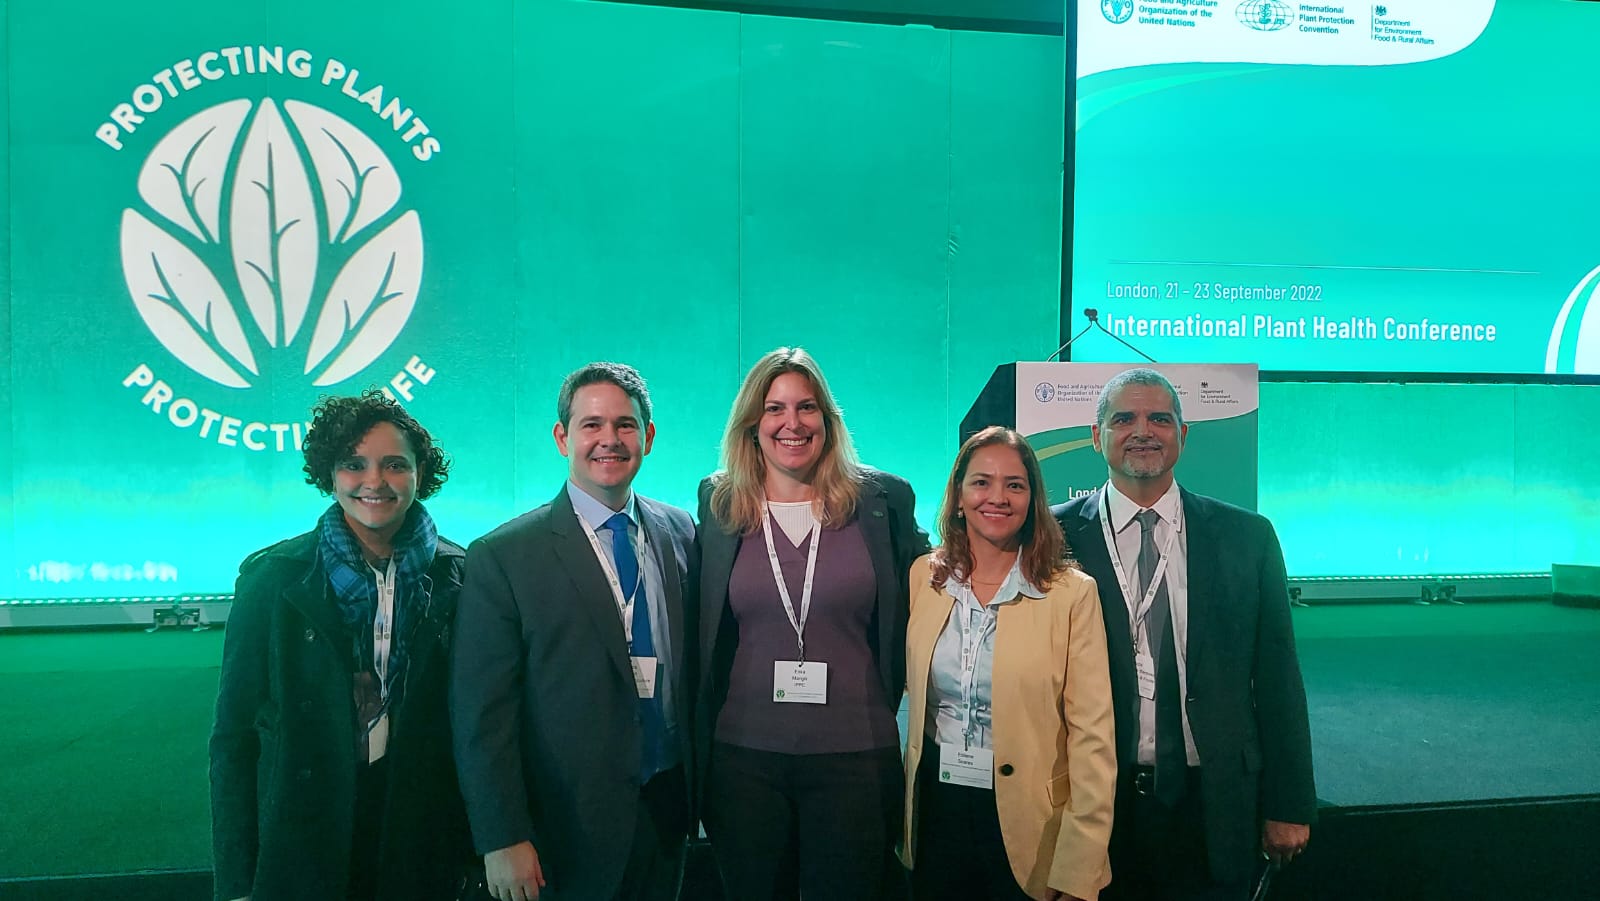 Embrapa integra delegação brasileira em conferência sobre fitossanidade em Londres